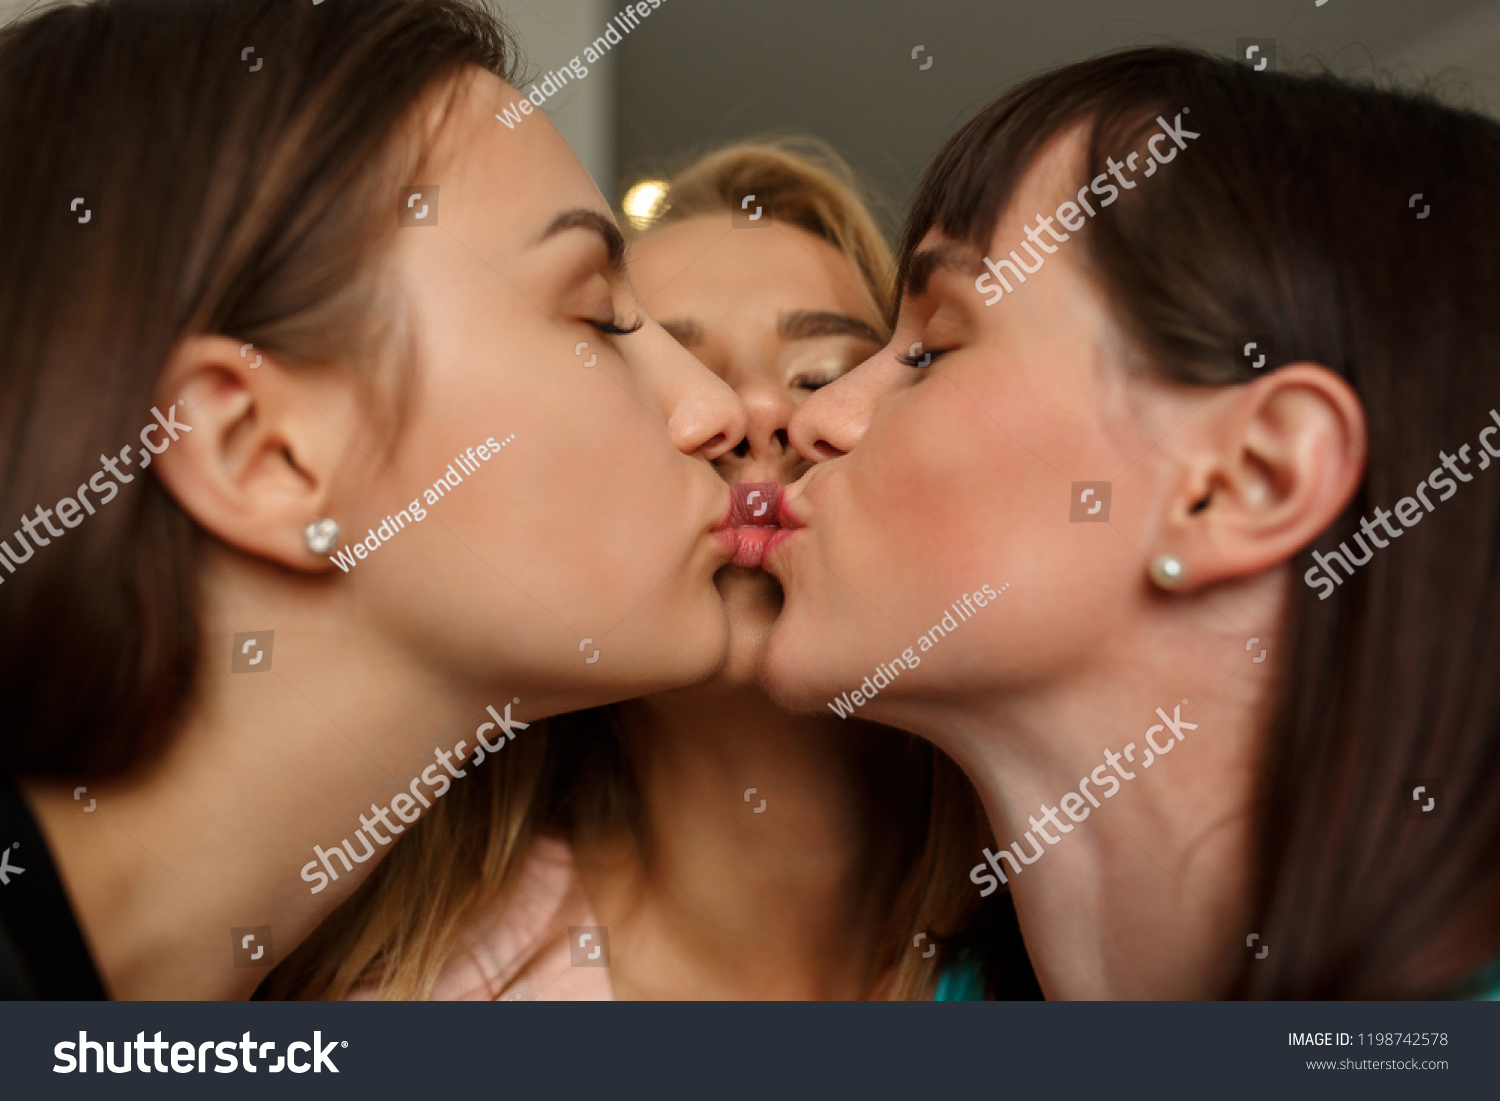 Lesbian kiss at first kiss